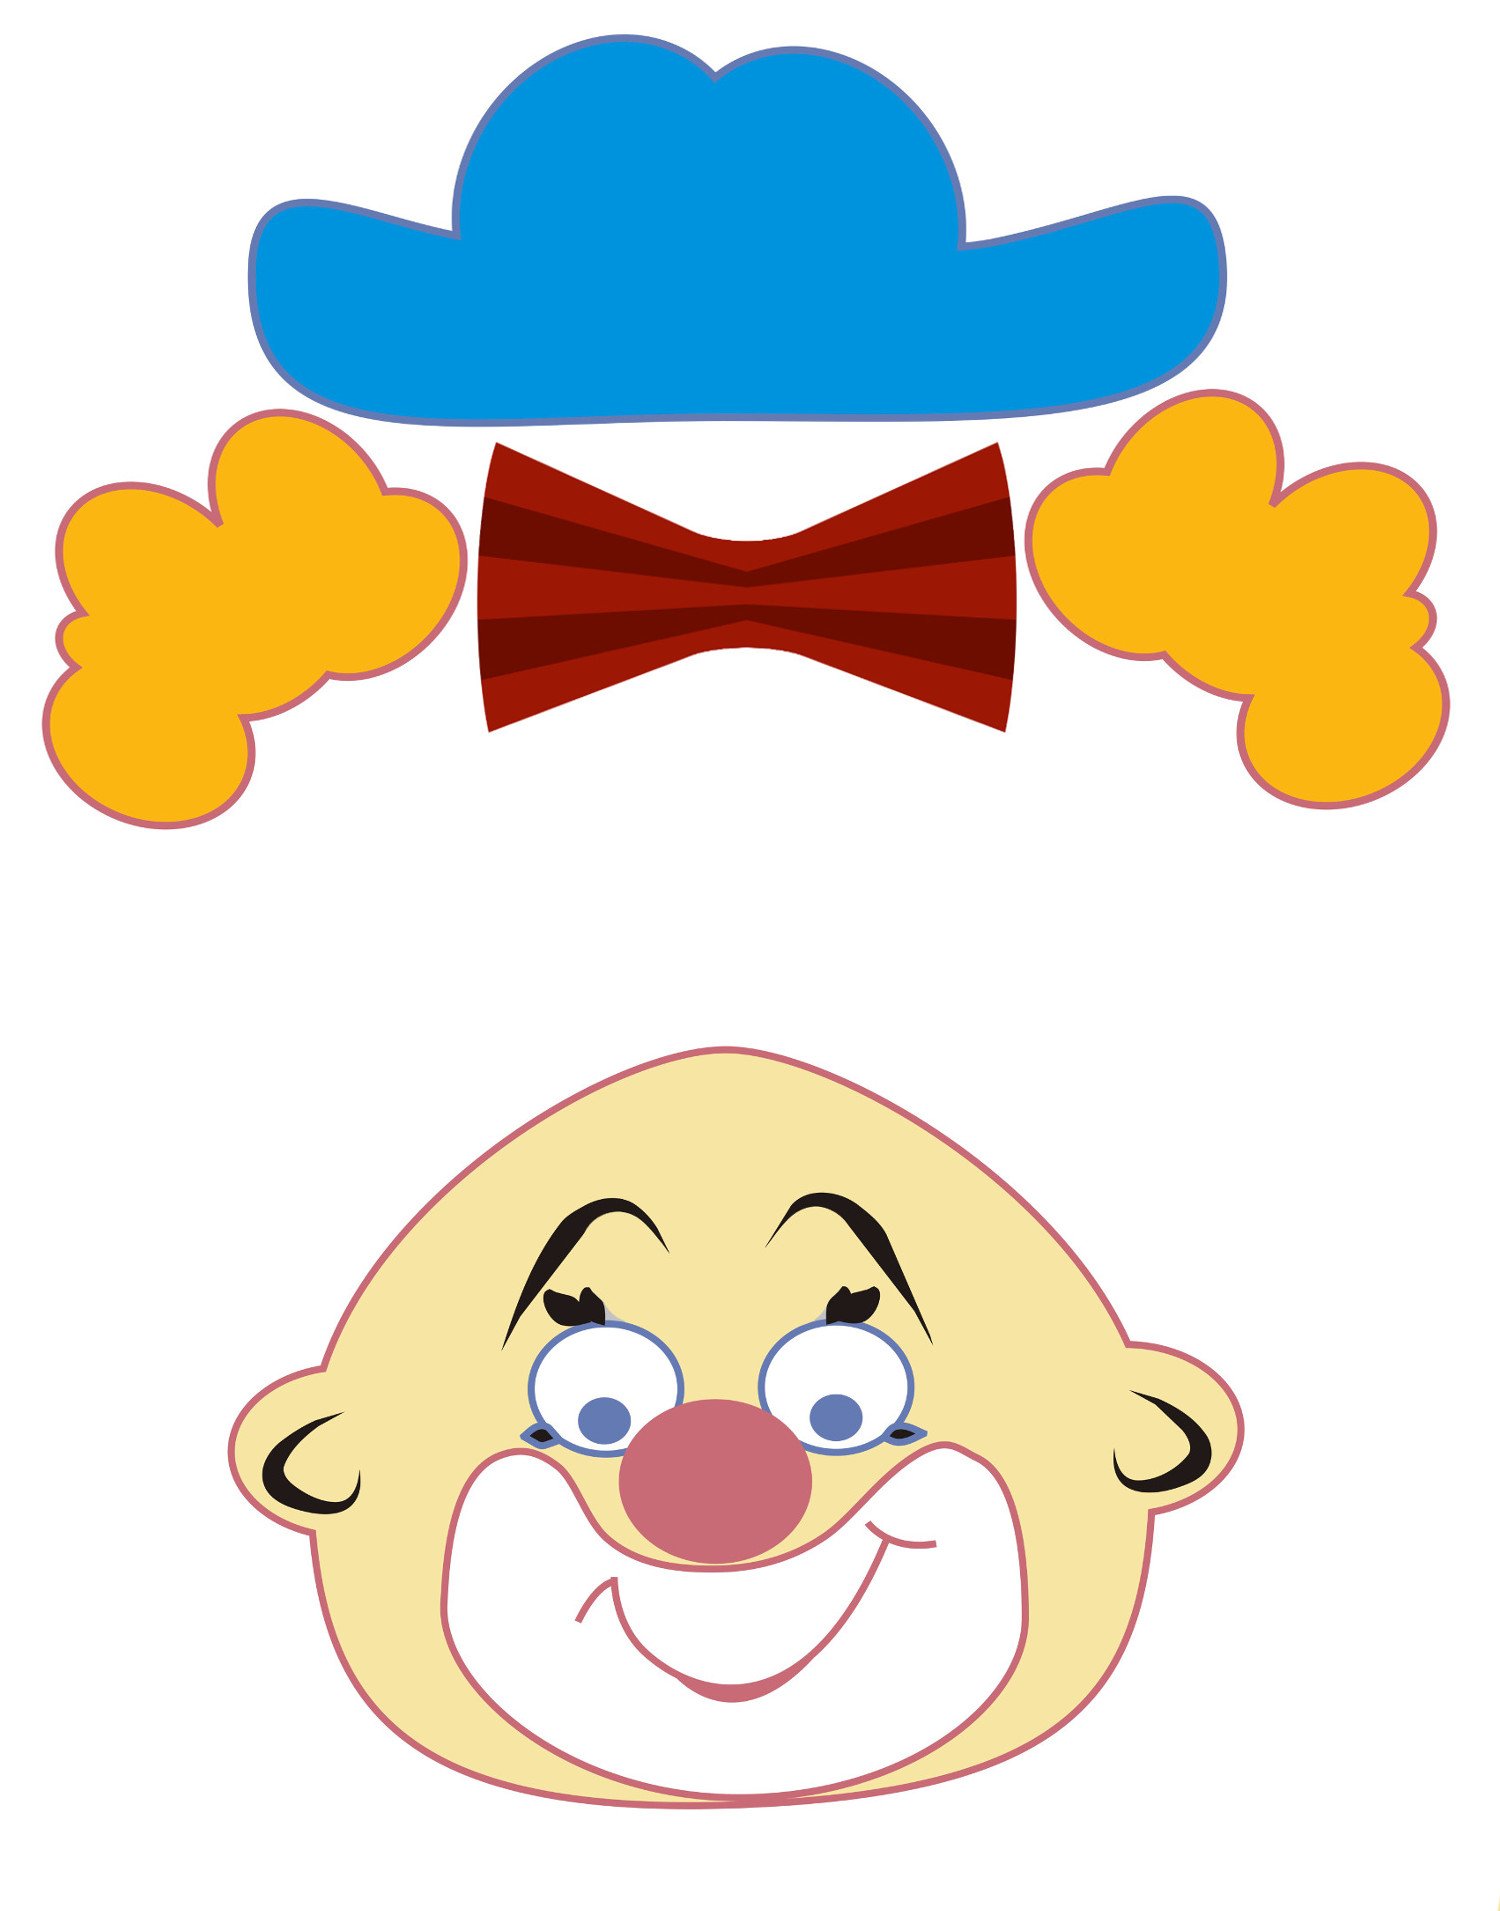 Шаблон клоуна для аппликации для детей. Аппликация клоун для малышей. Весёлая аппликация "клоун". Клоун шаблоны для аппликации. Голова клоуна для аппликации.